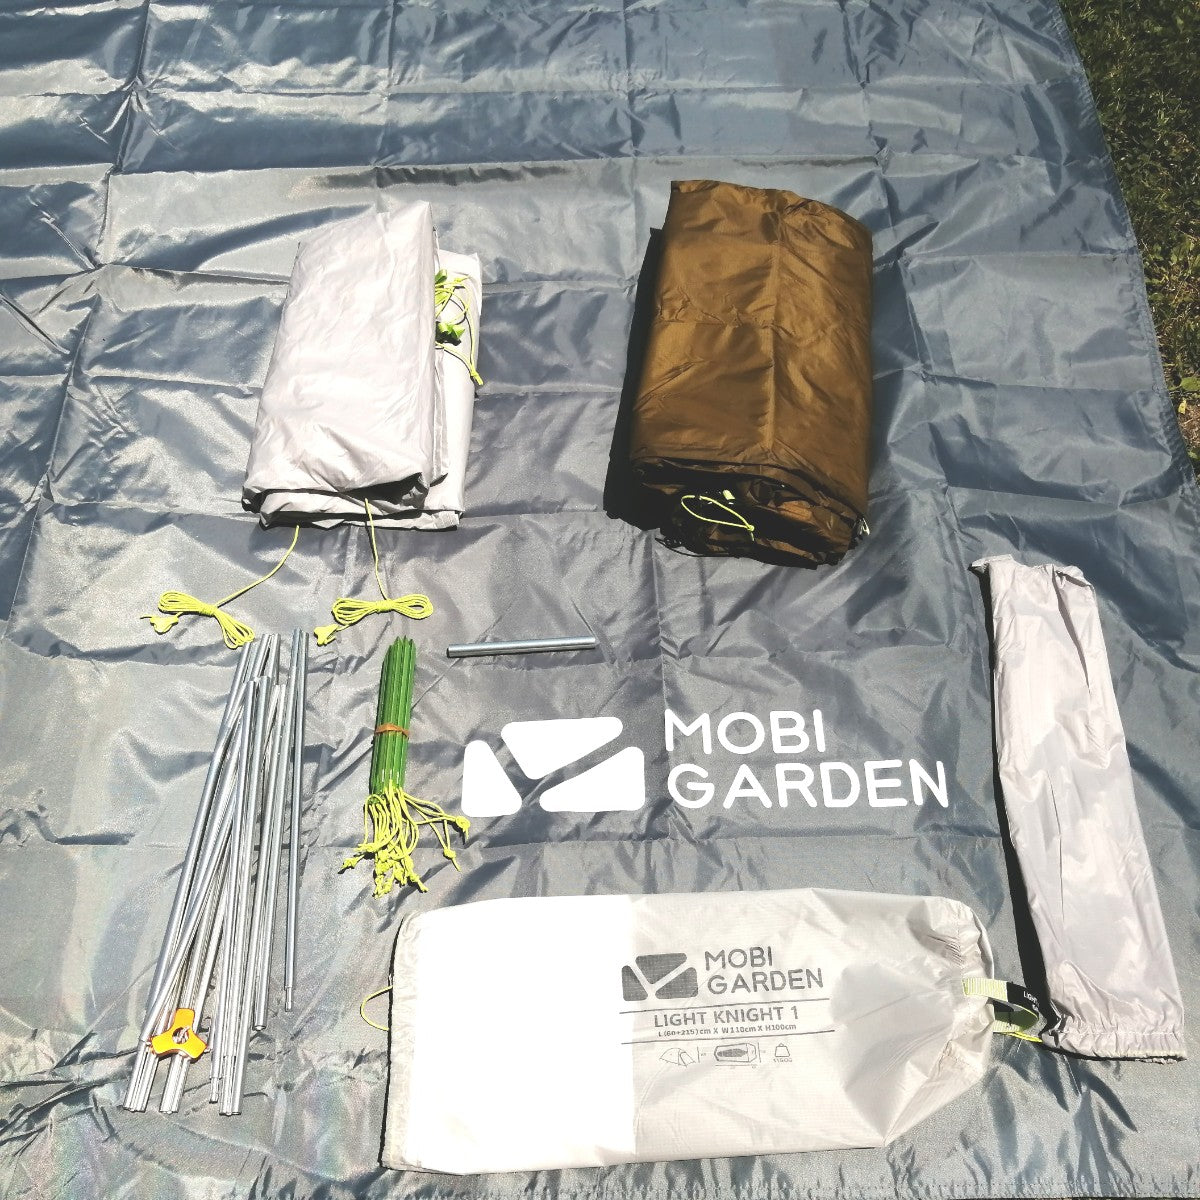 テント キャンプ MOBI GARDEN モビガーデン LIGHT KNIGHT 1/1 1人用 軽量 ソロ ソロテント mobi gard